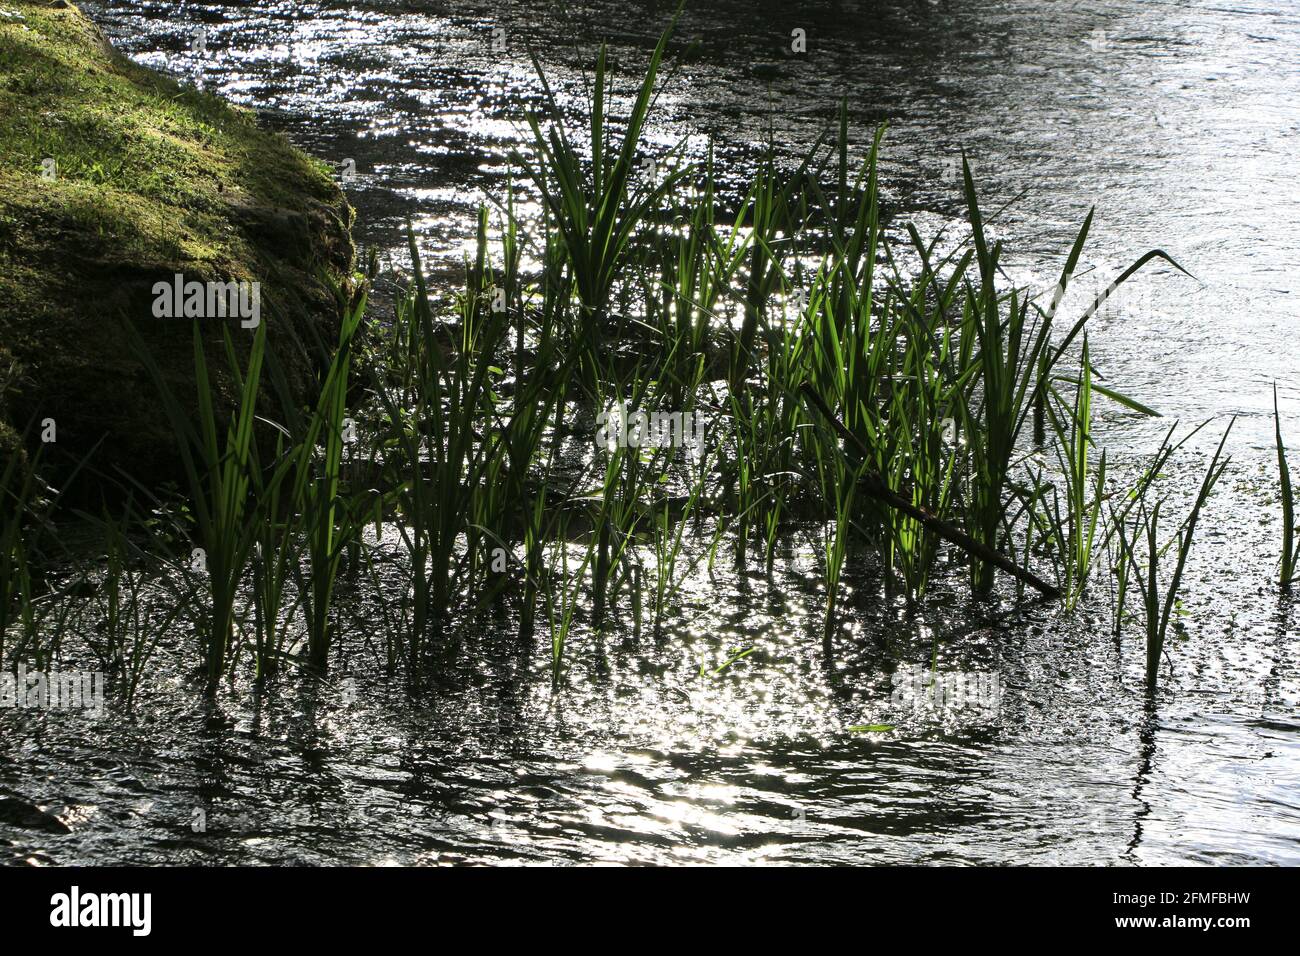 Schilf am Ufer des Flusses Ruente ein Nebenfluss des Flusses Saja Ruente Kantabrien Spanien Stockfoto